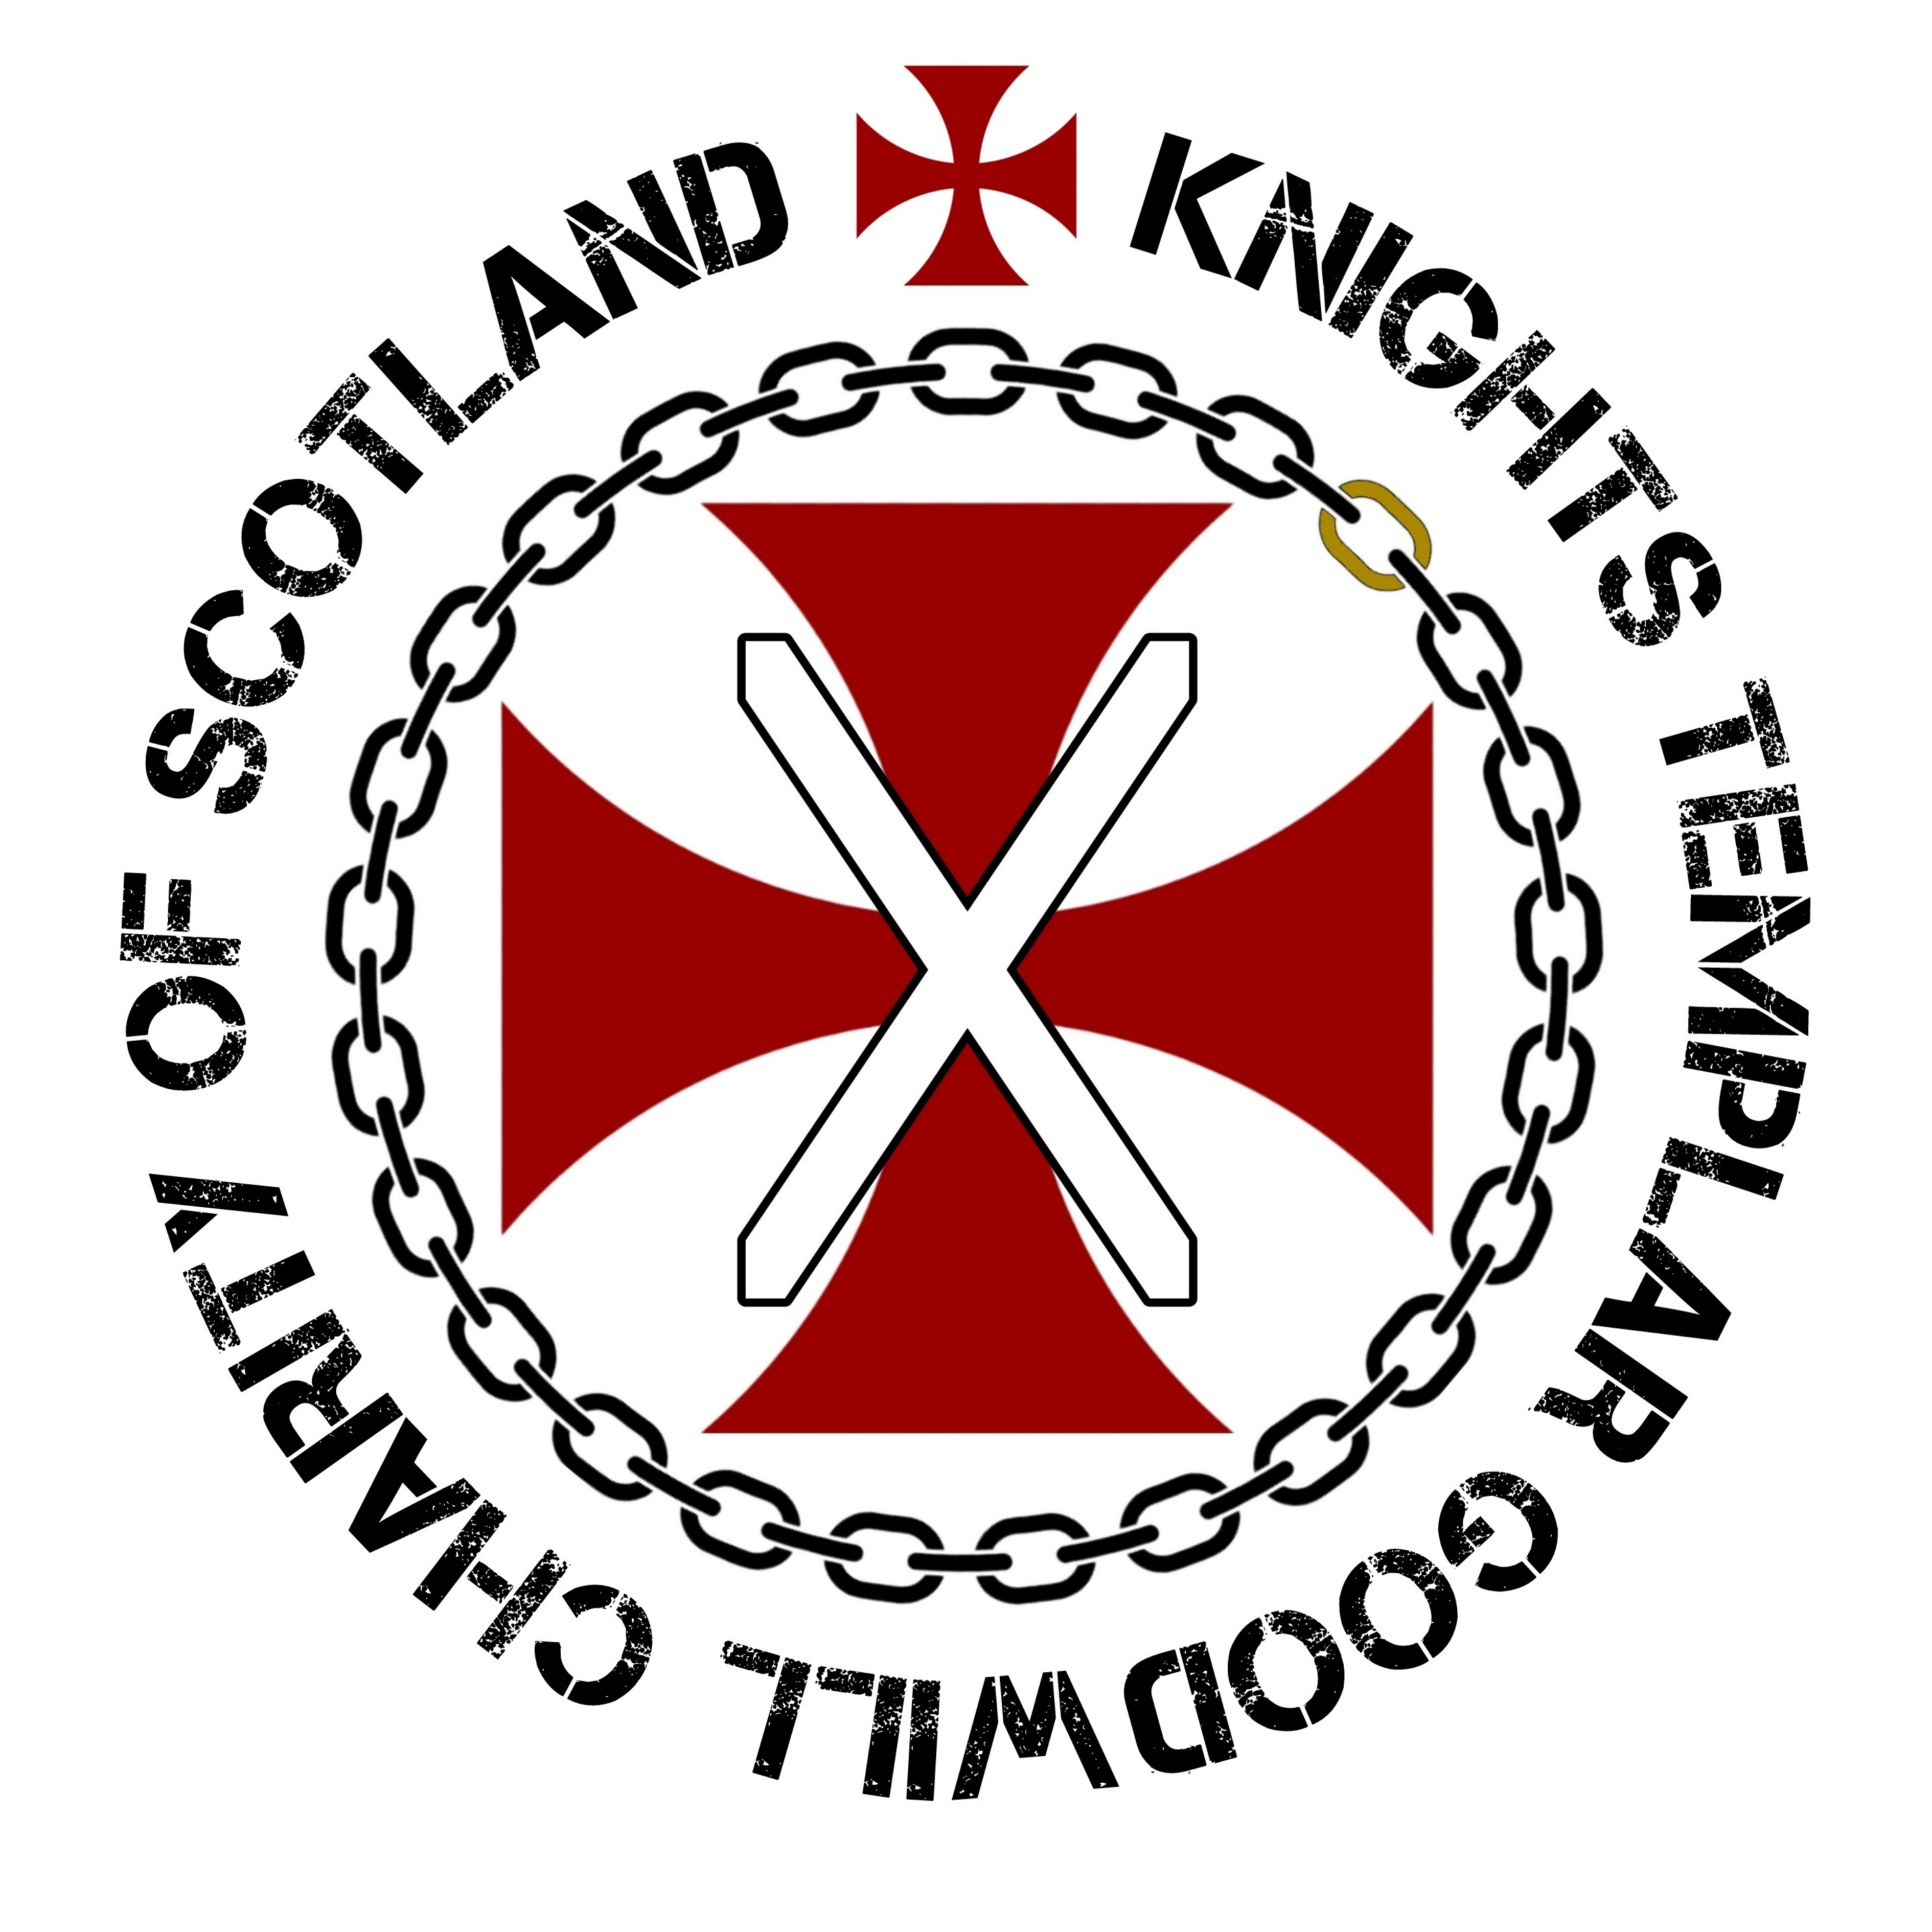 KTGCScotland